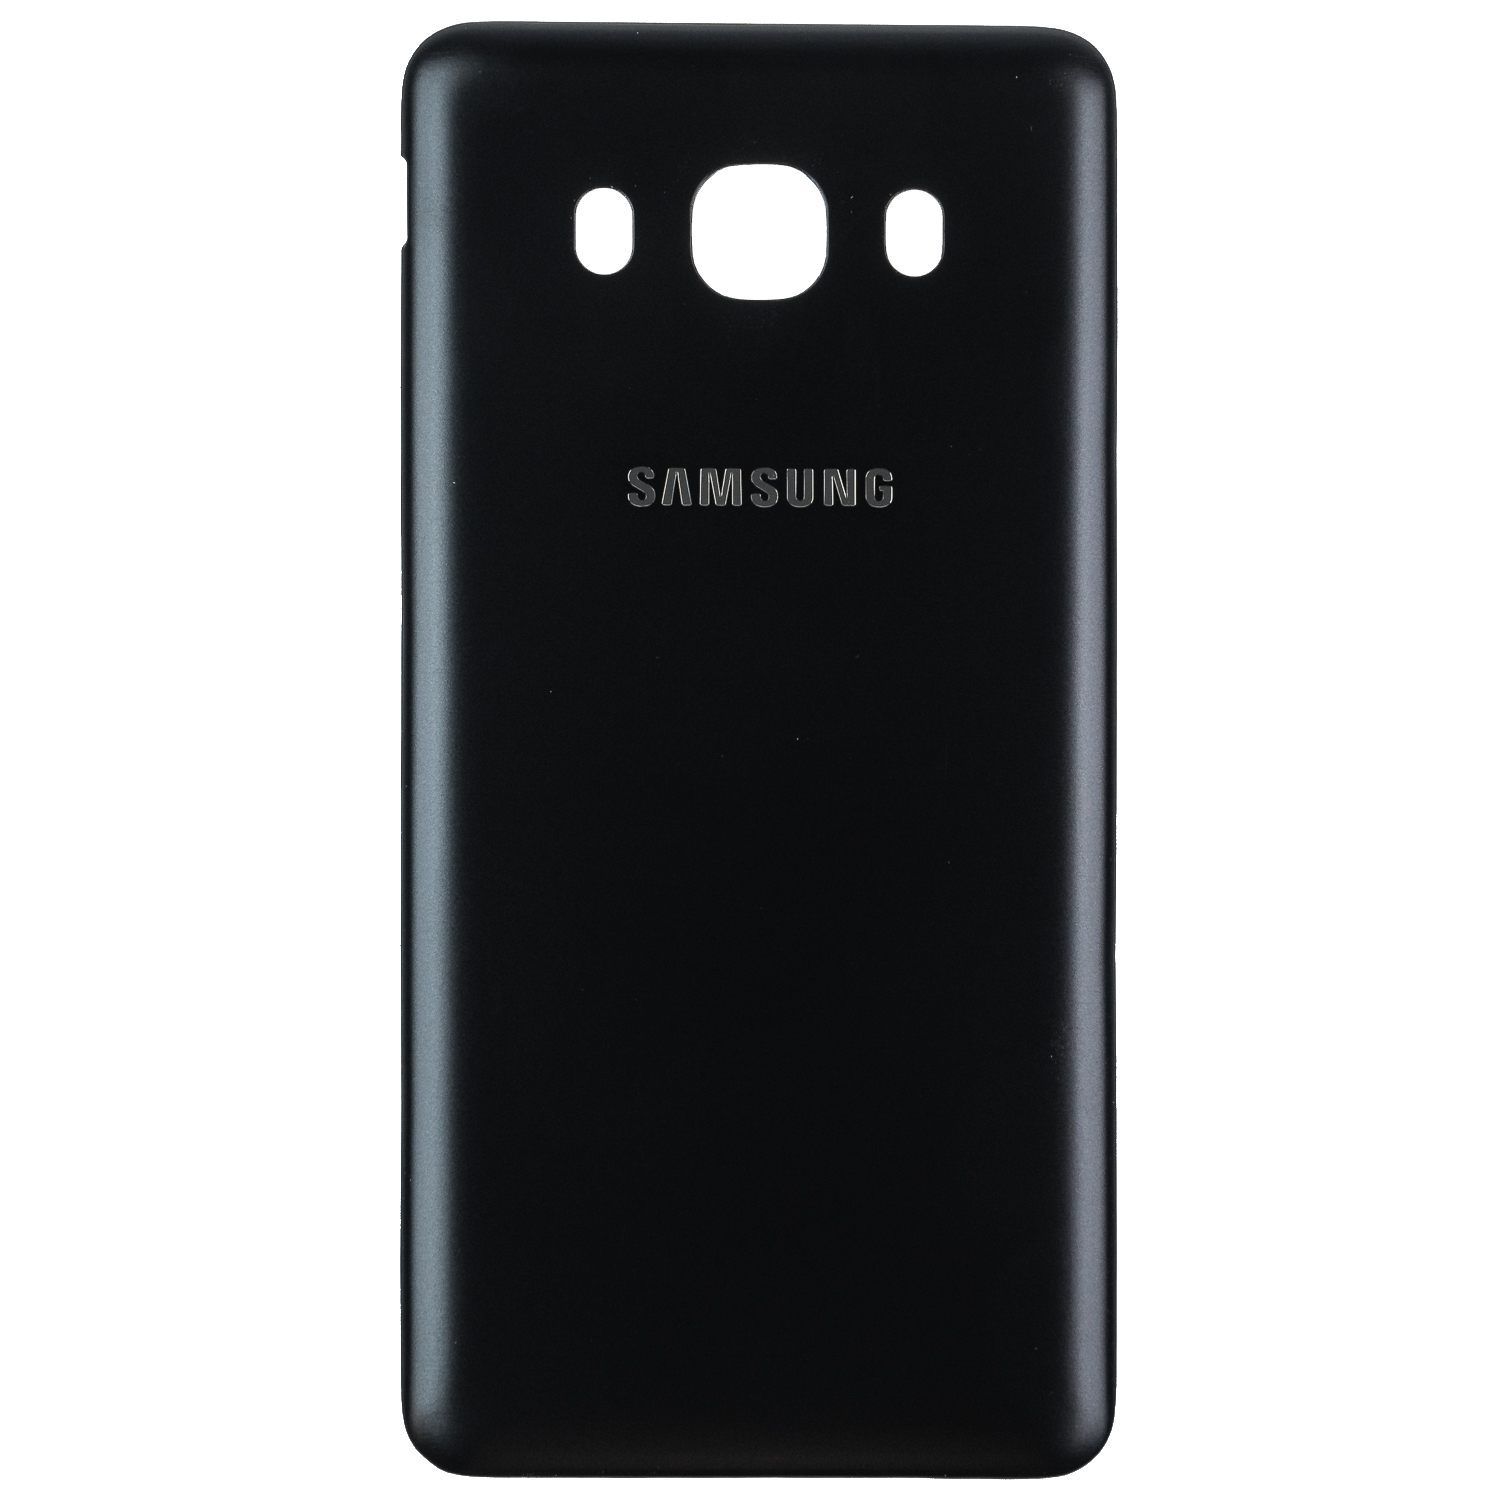 Samsung Galaxy J5 2016 achterkant kopen? 10 ervaring | Partly